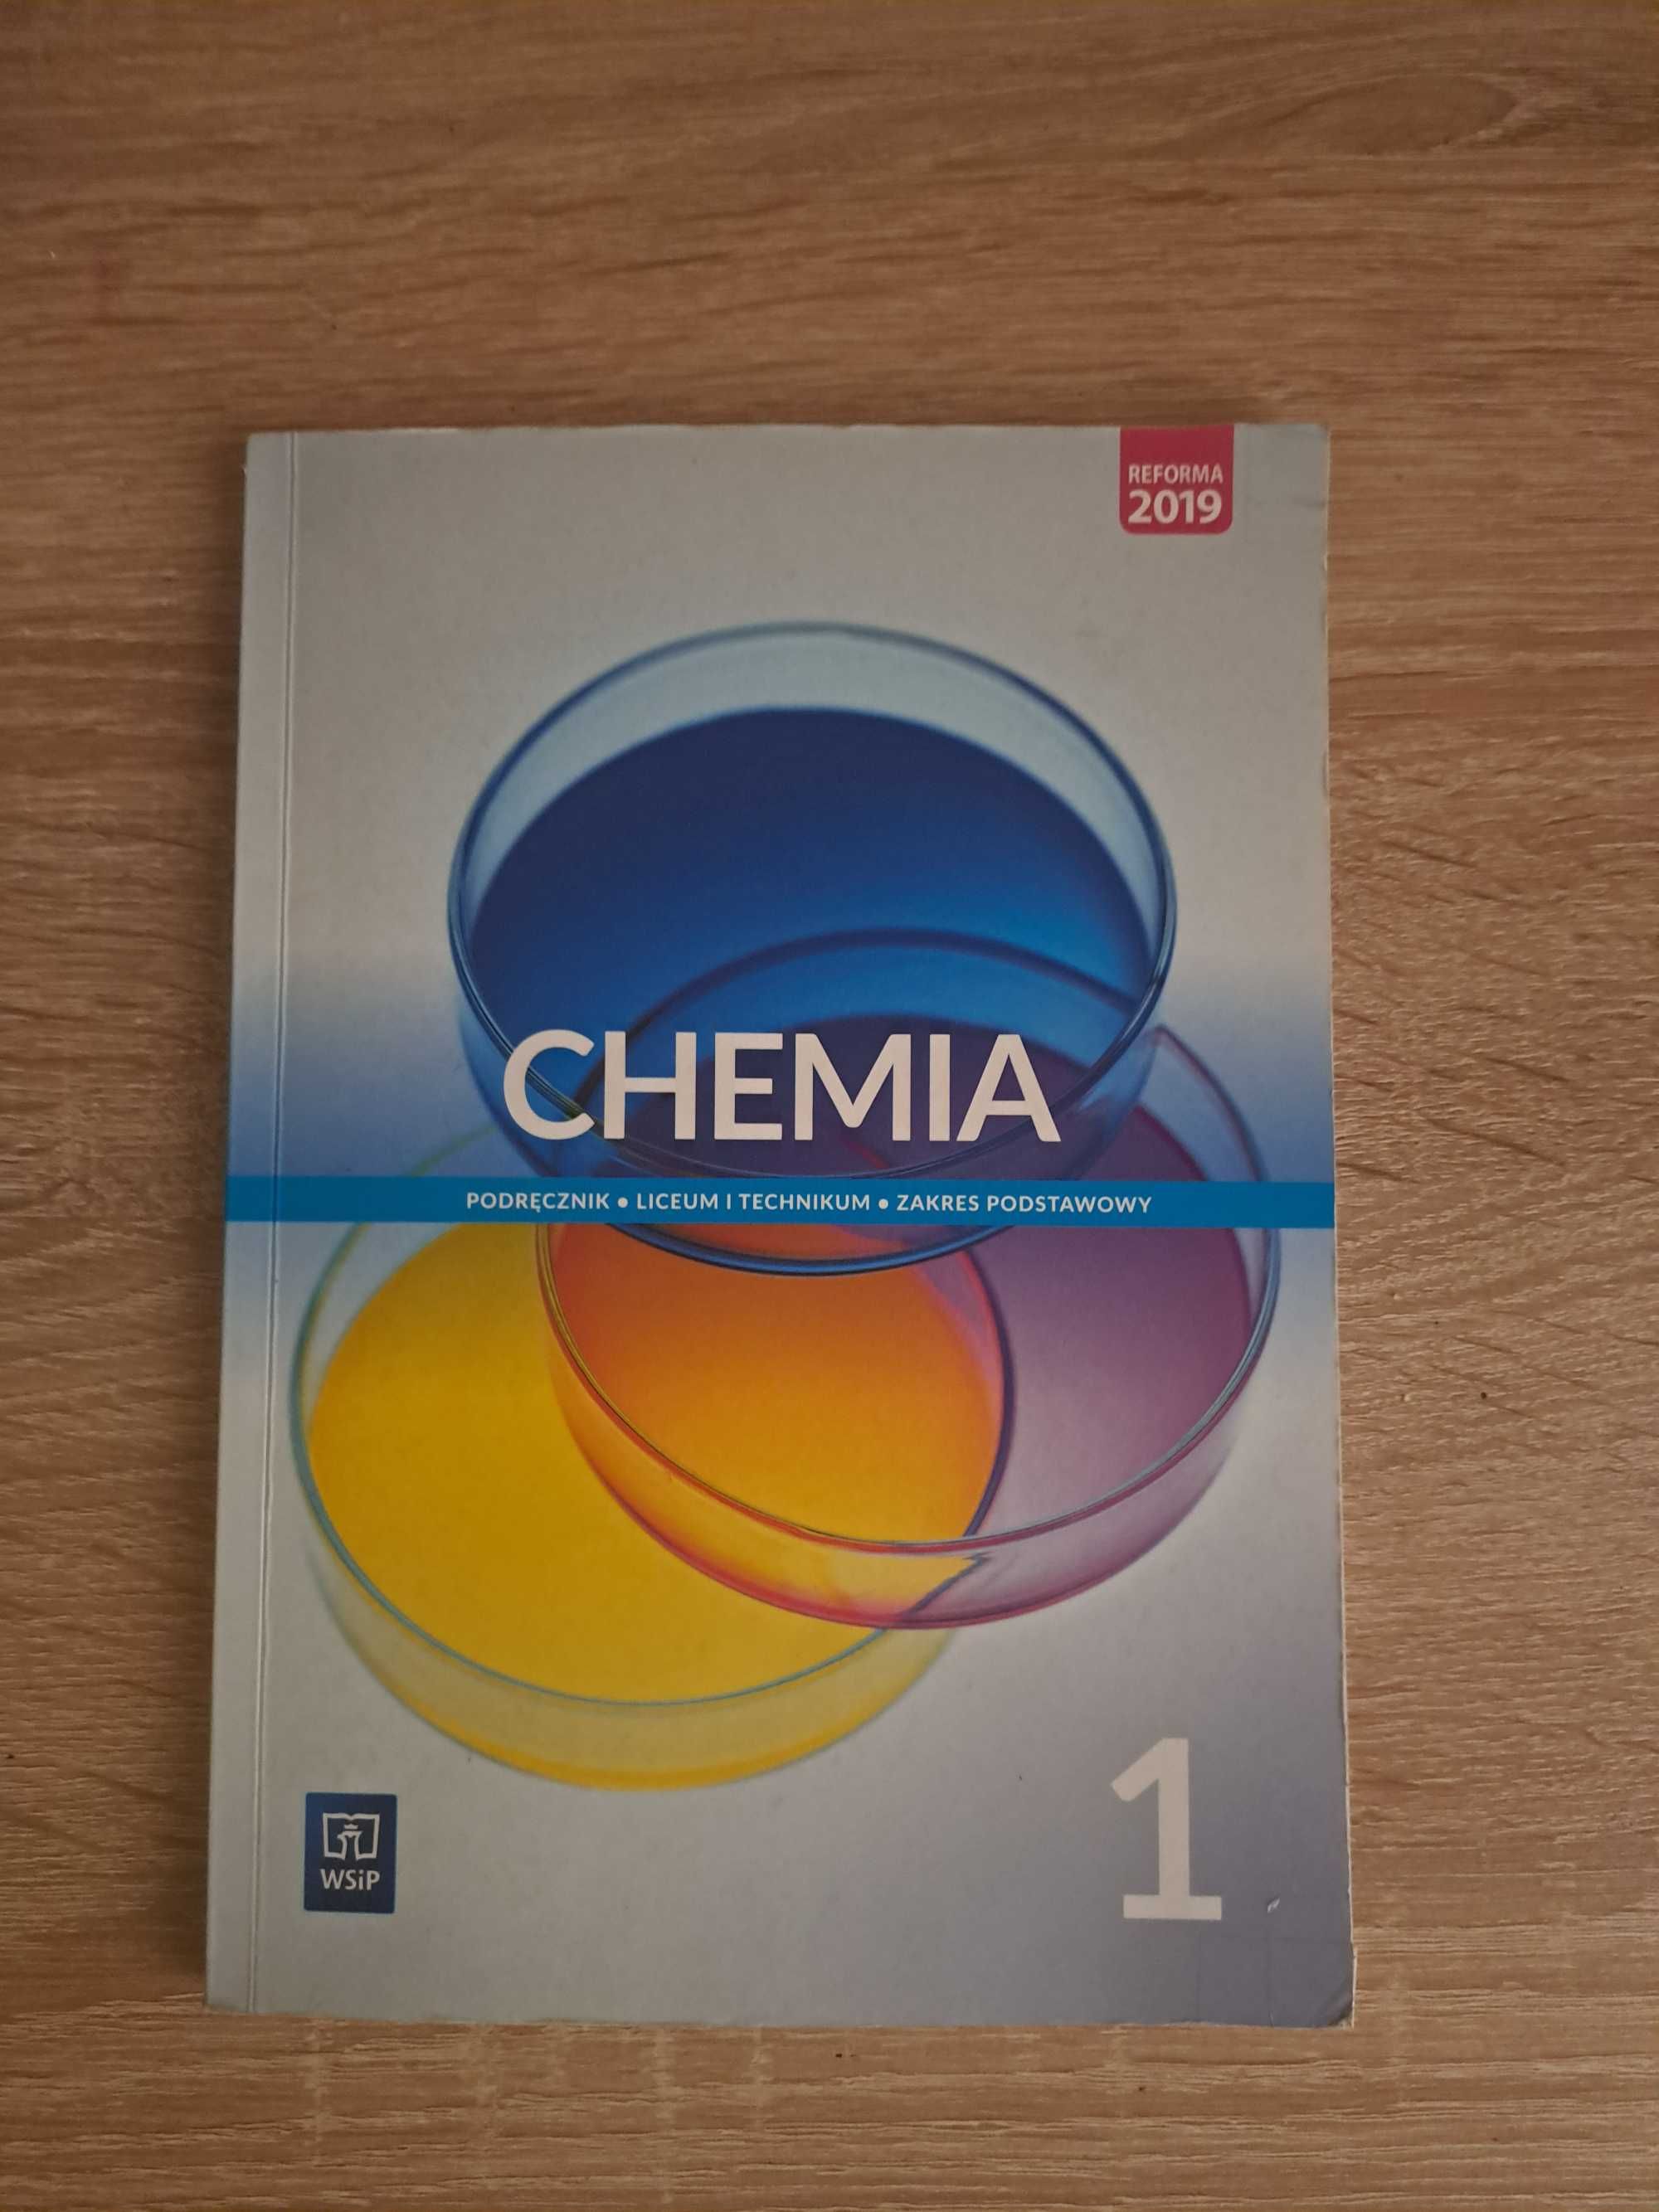 Chemia 1 podręcznik